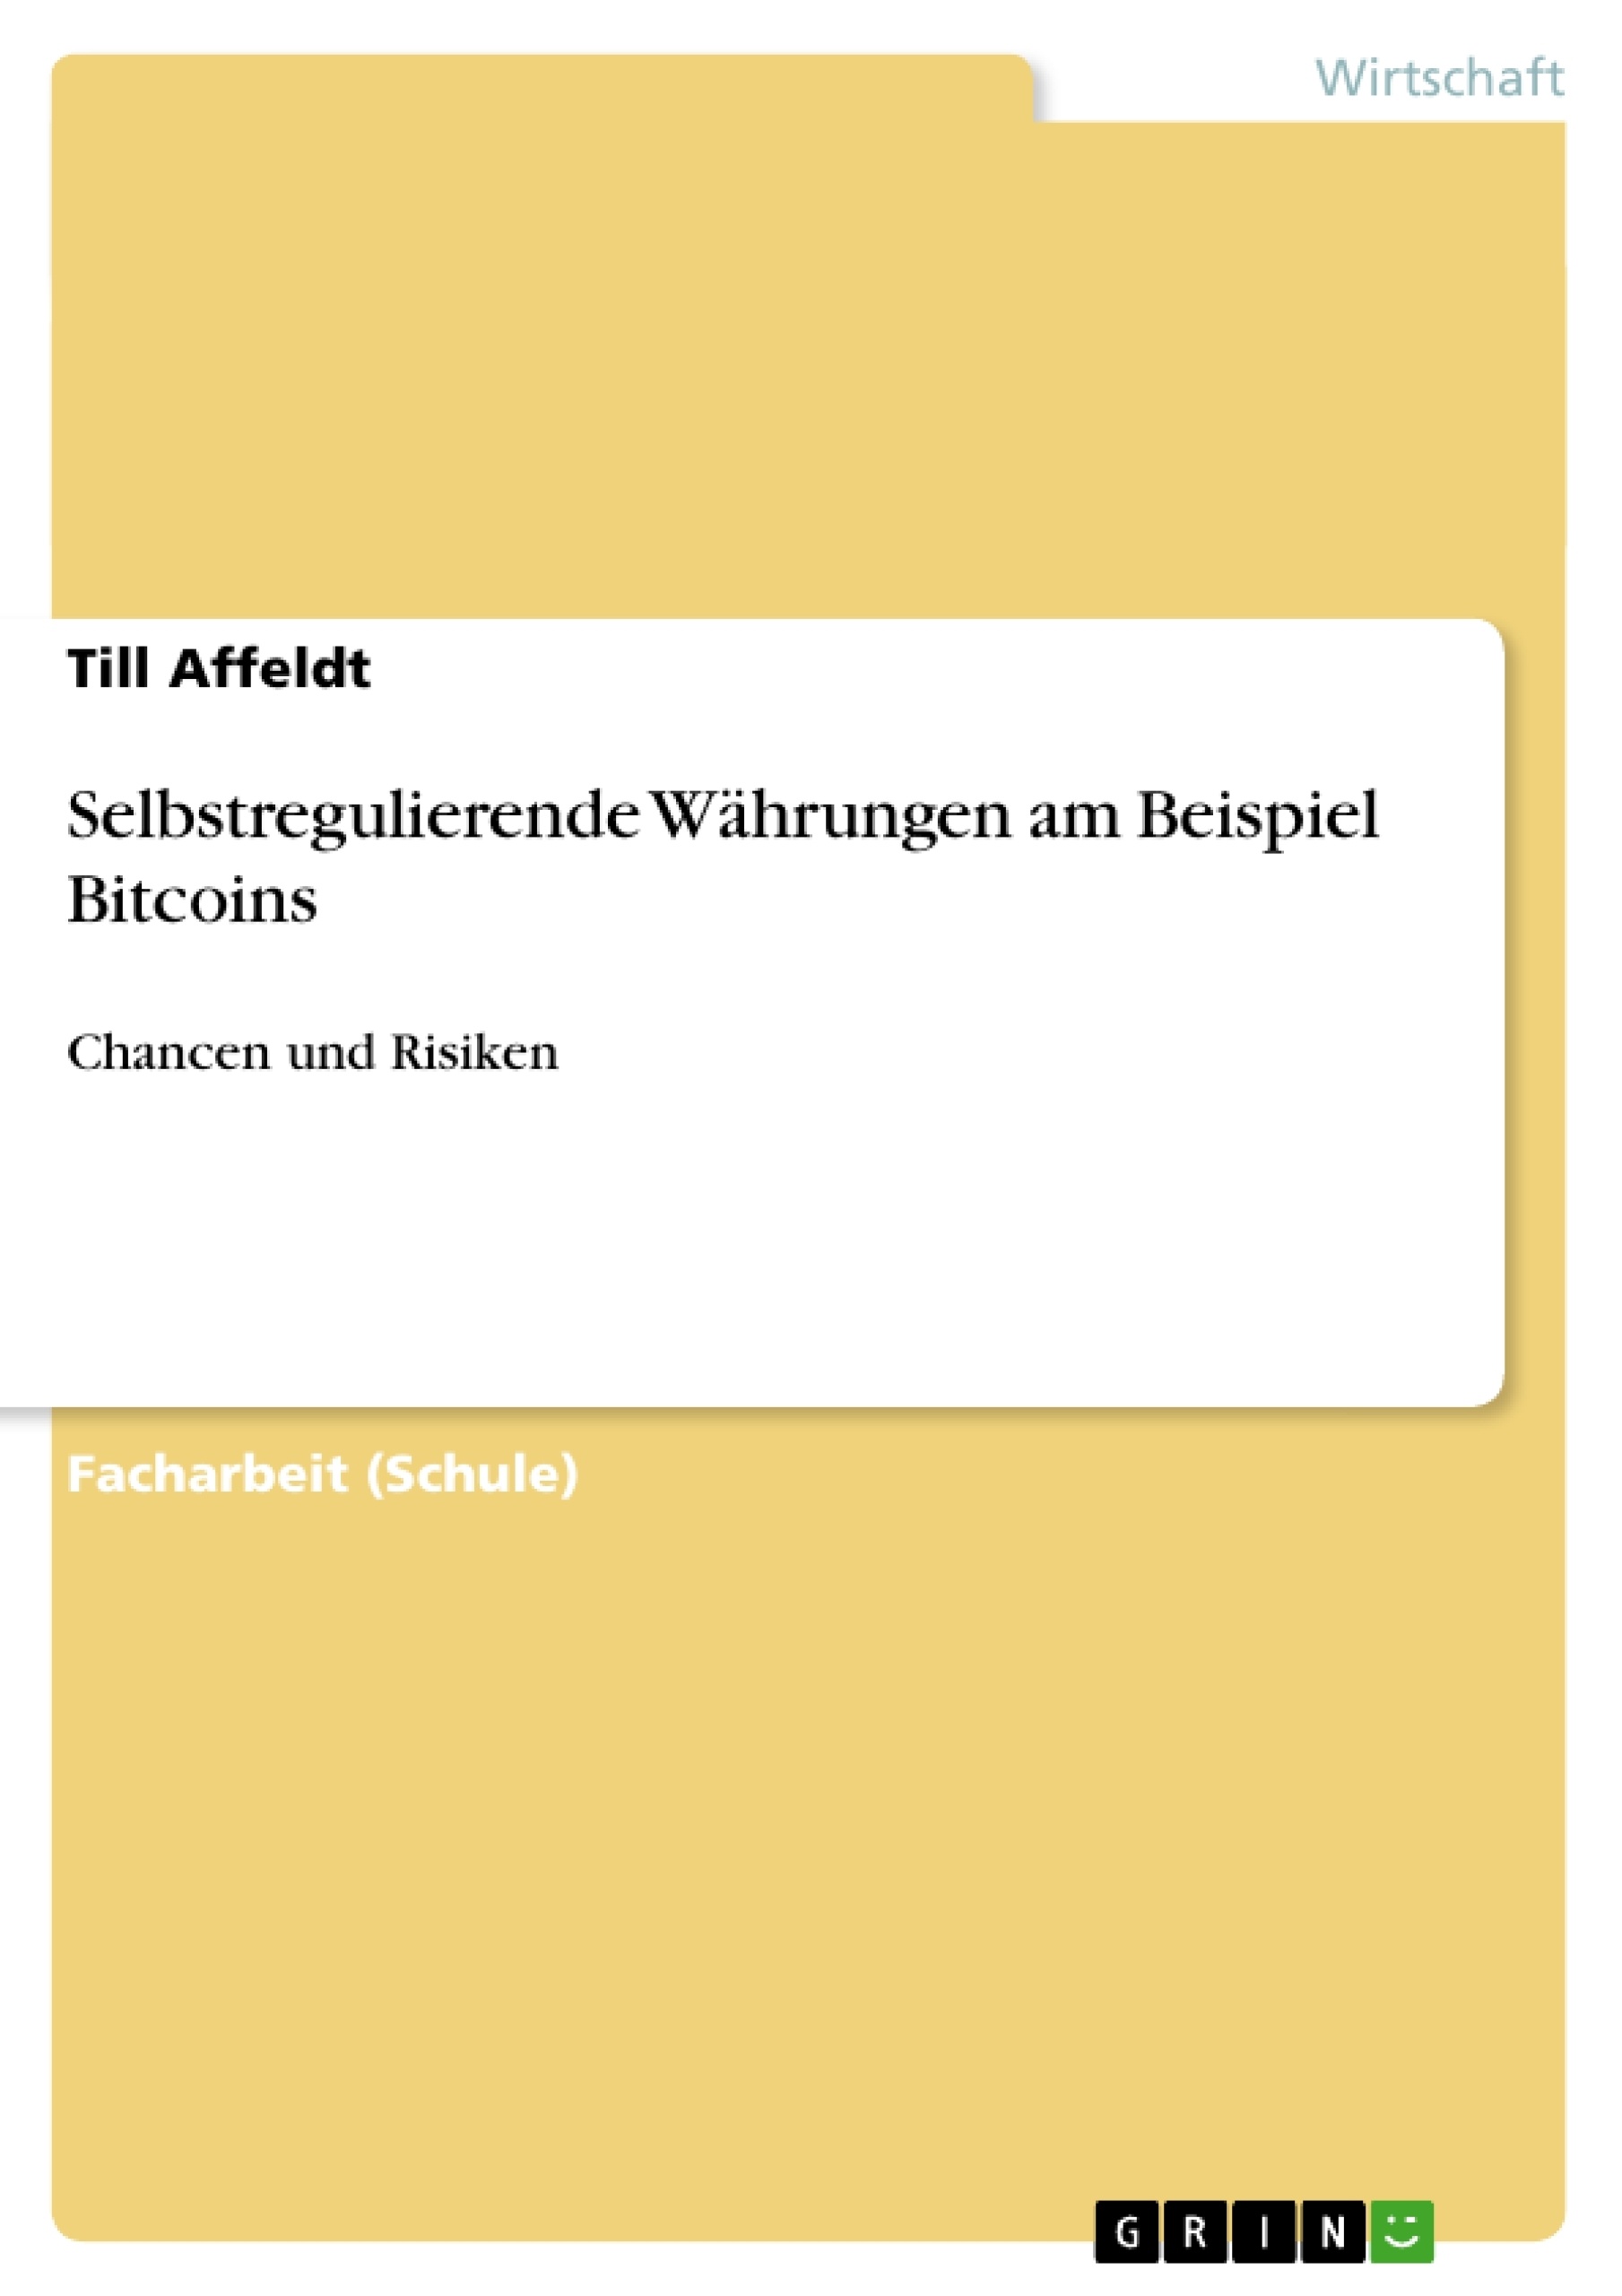 Title: Selbstregulierende Währungen am Beispiel Bitcoins